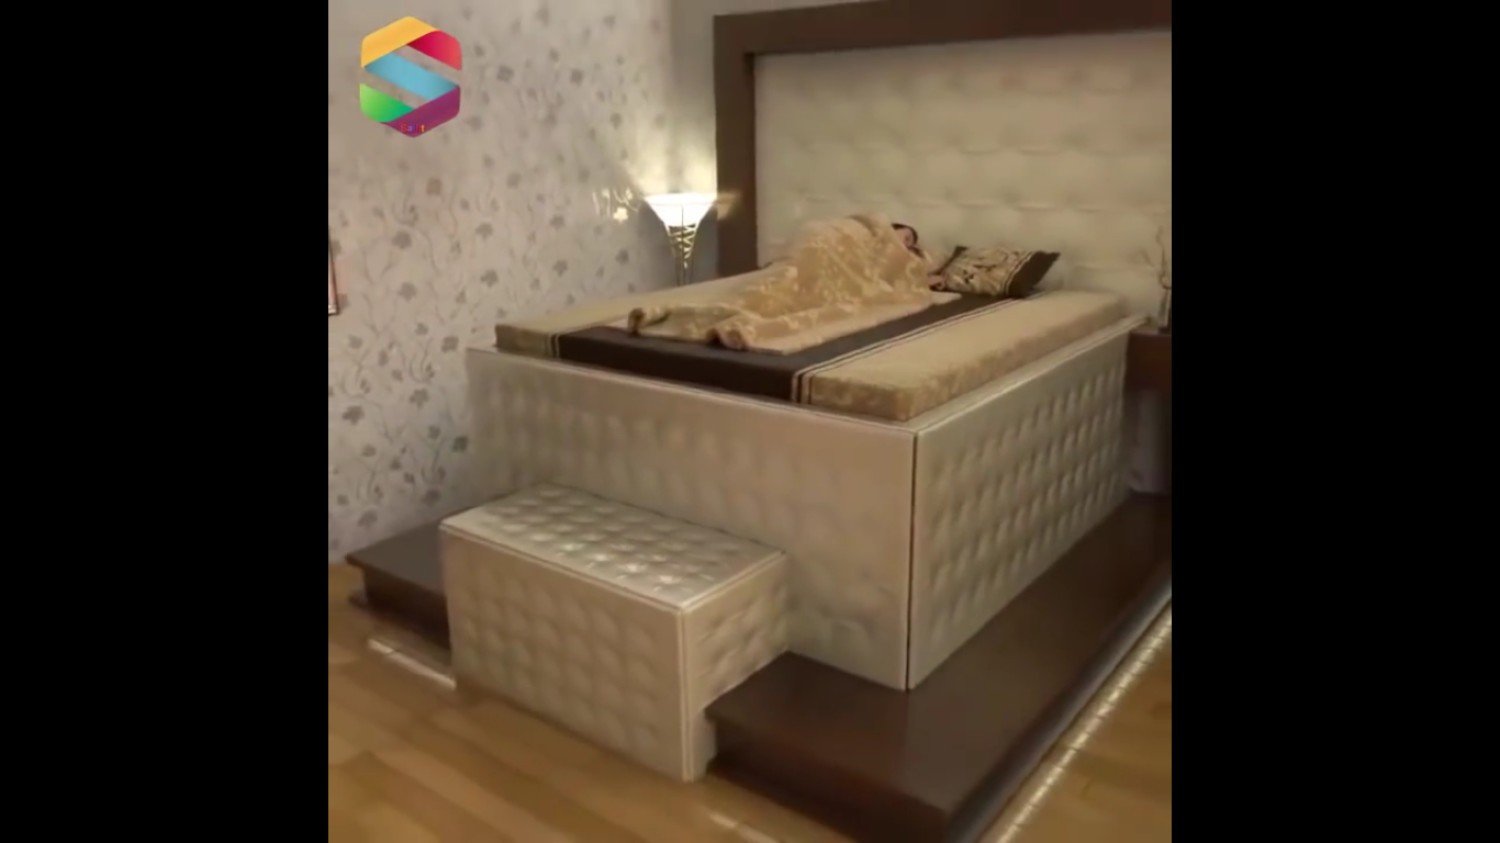 Chińczycy wymyślili łóżko, które... połknie cię w razie niebezpieczeństwa |  Warszawa Nasze Miasto